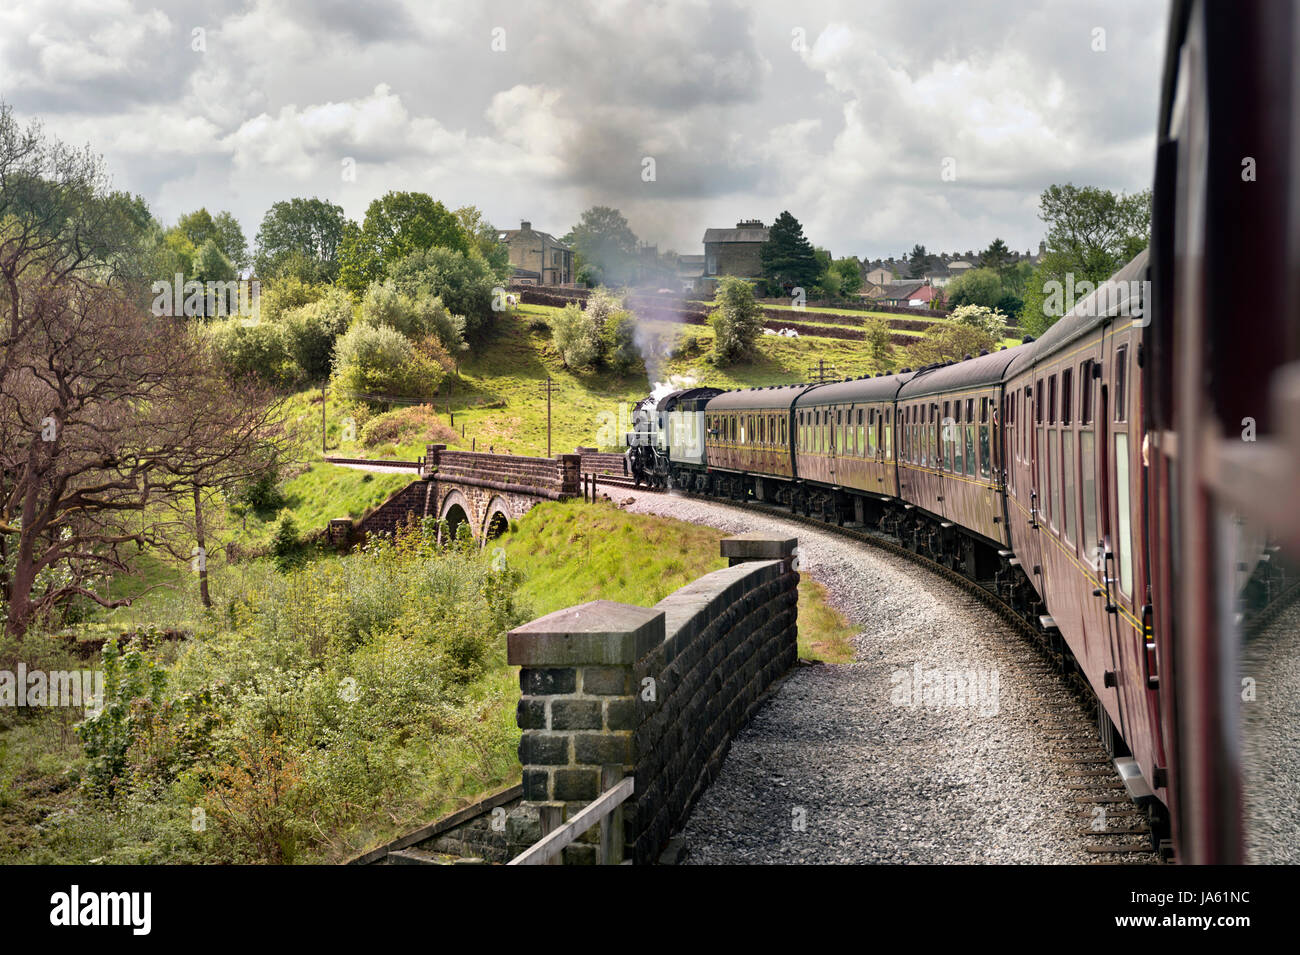 Haworth 1940 Fin de semaine. Train remorqué par American World War 2 S160 2-8-0 loco no 5820, Keighley et chemin de fer de la vallée d'une valeur. Keighley, West Yorkshire, Royaume-Uni Banque D'Images